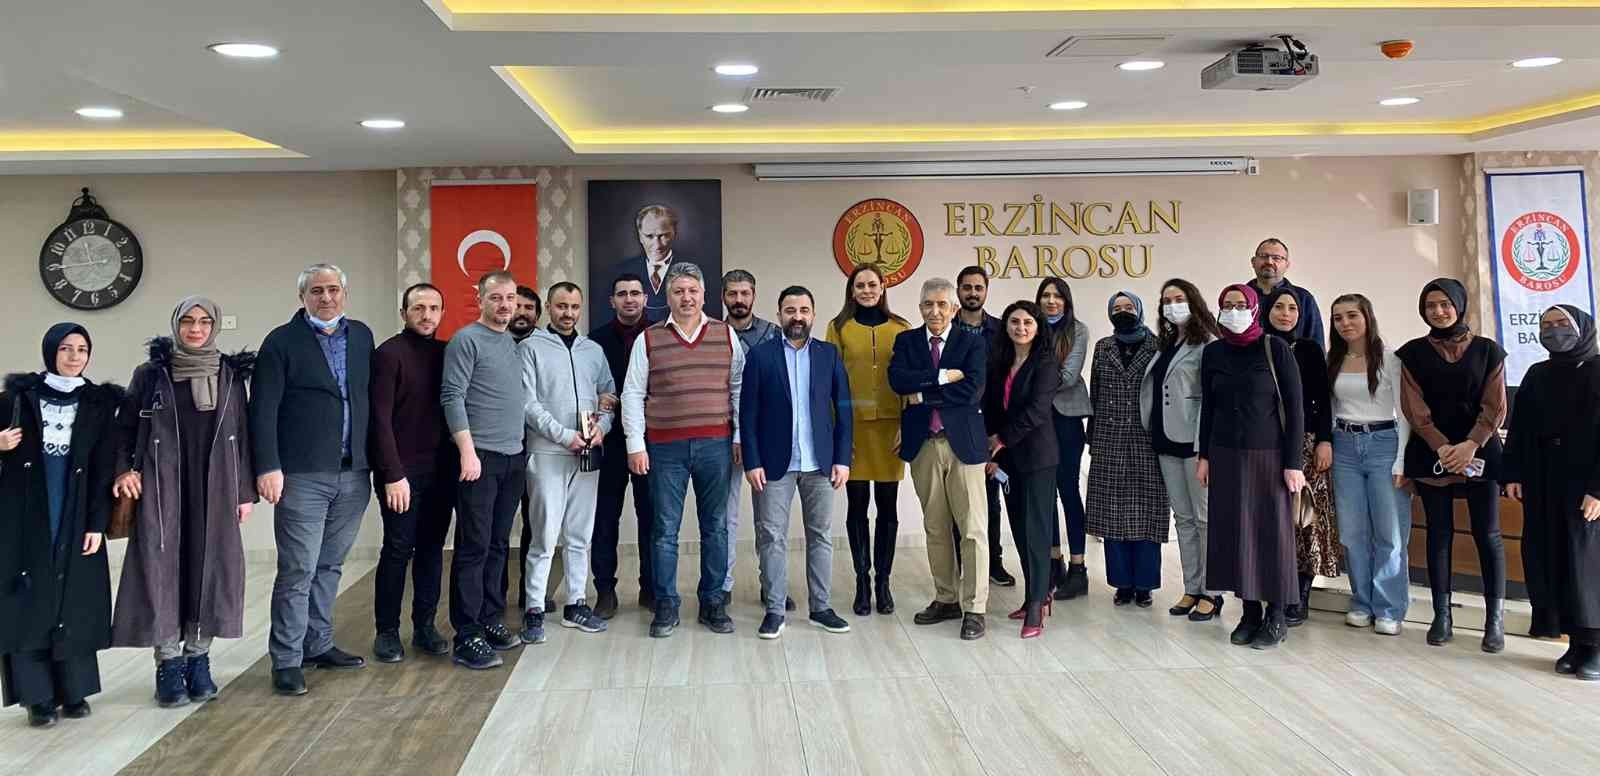 Barodan meslek içi eğitim semineri #erzincan